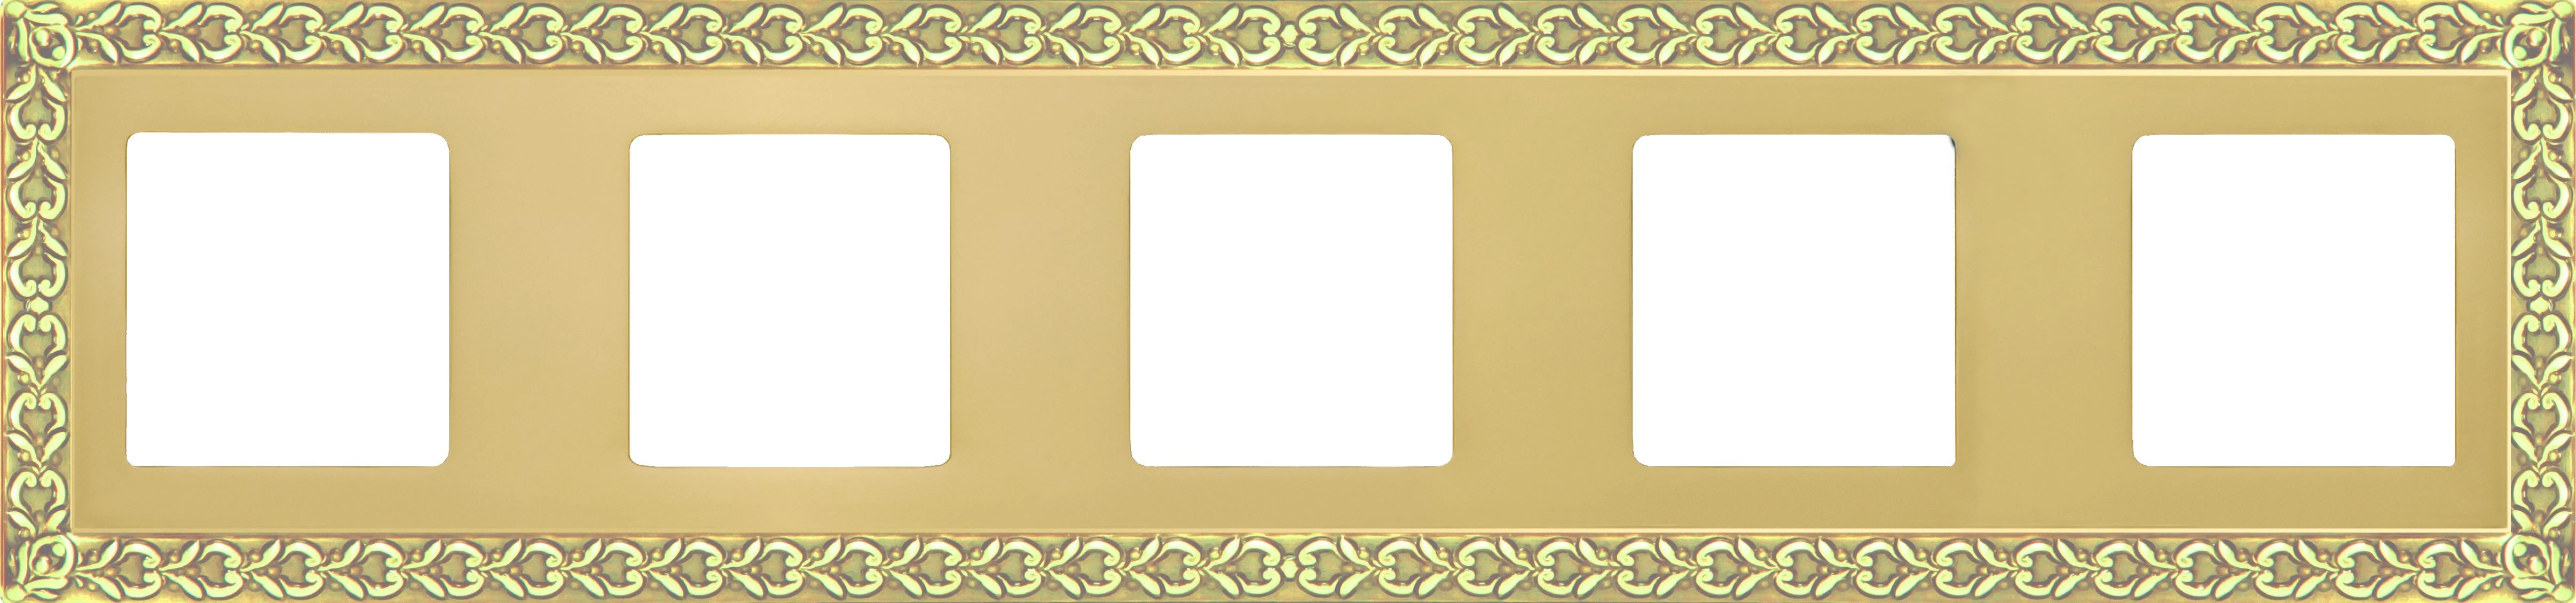  артикул FD01225OB название Рамка пятерная, цвет Светлое золото, San Sebastian, Fede